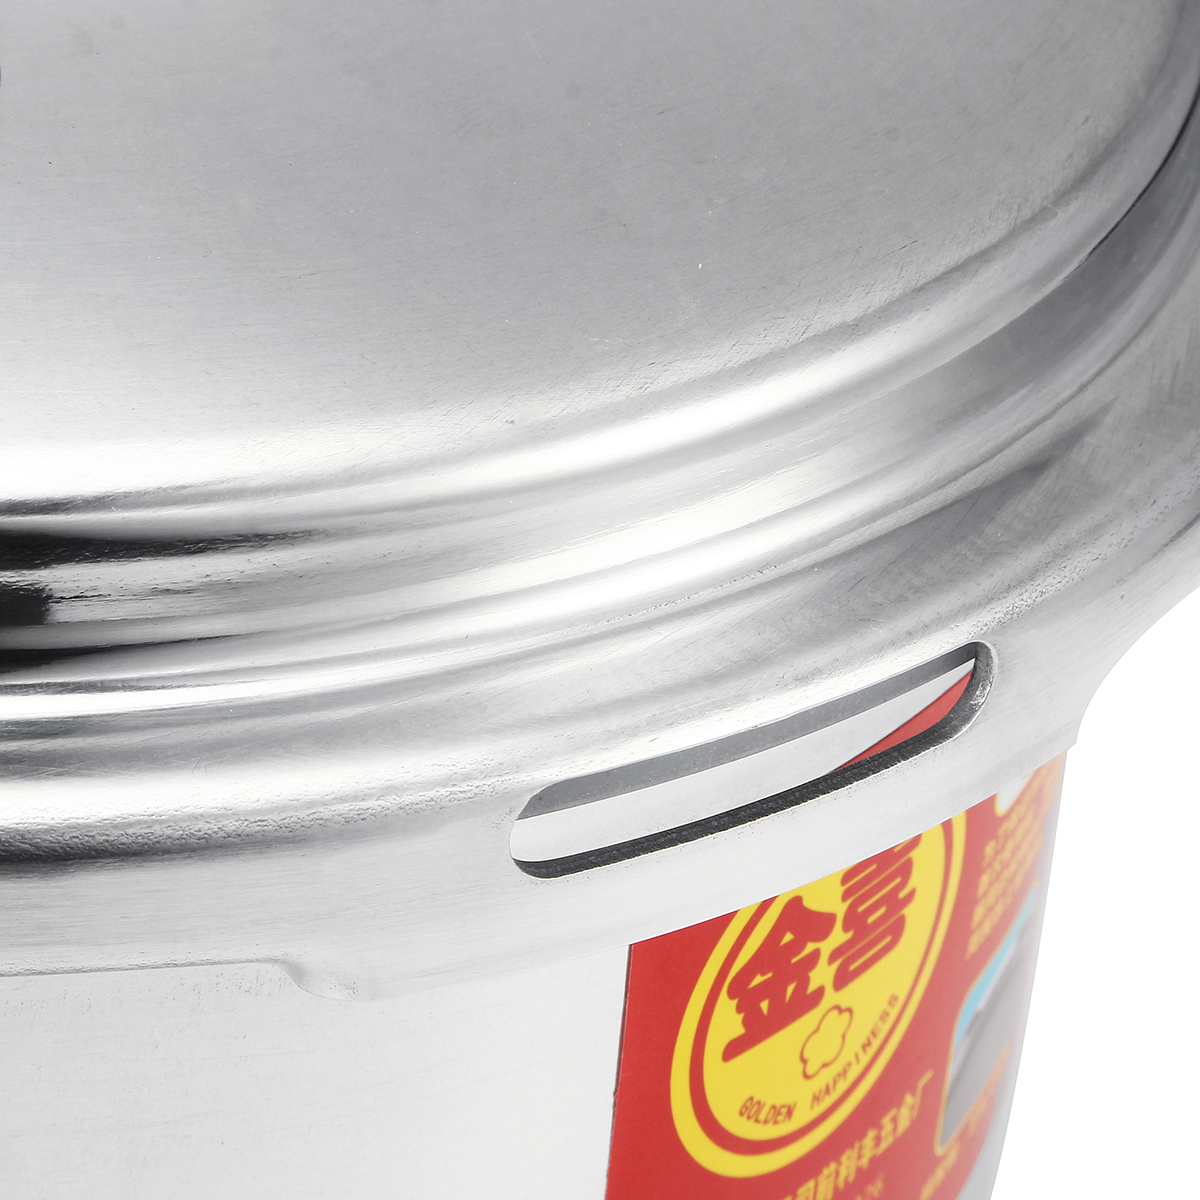 4L5L-Pressure-Cooker-Commercial-Aluminum-Alloy-Pressure-Cooker-1720053-11